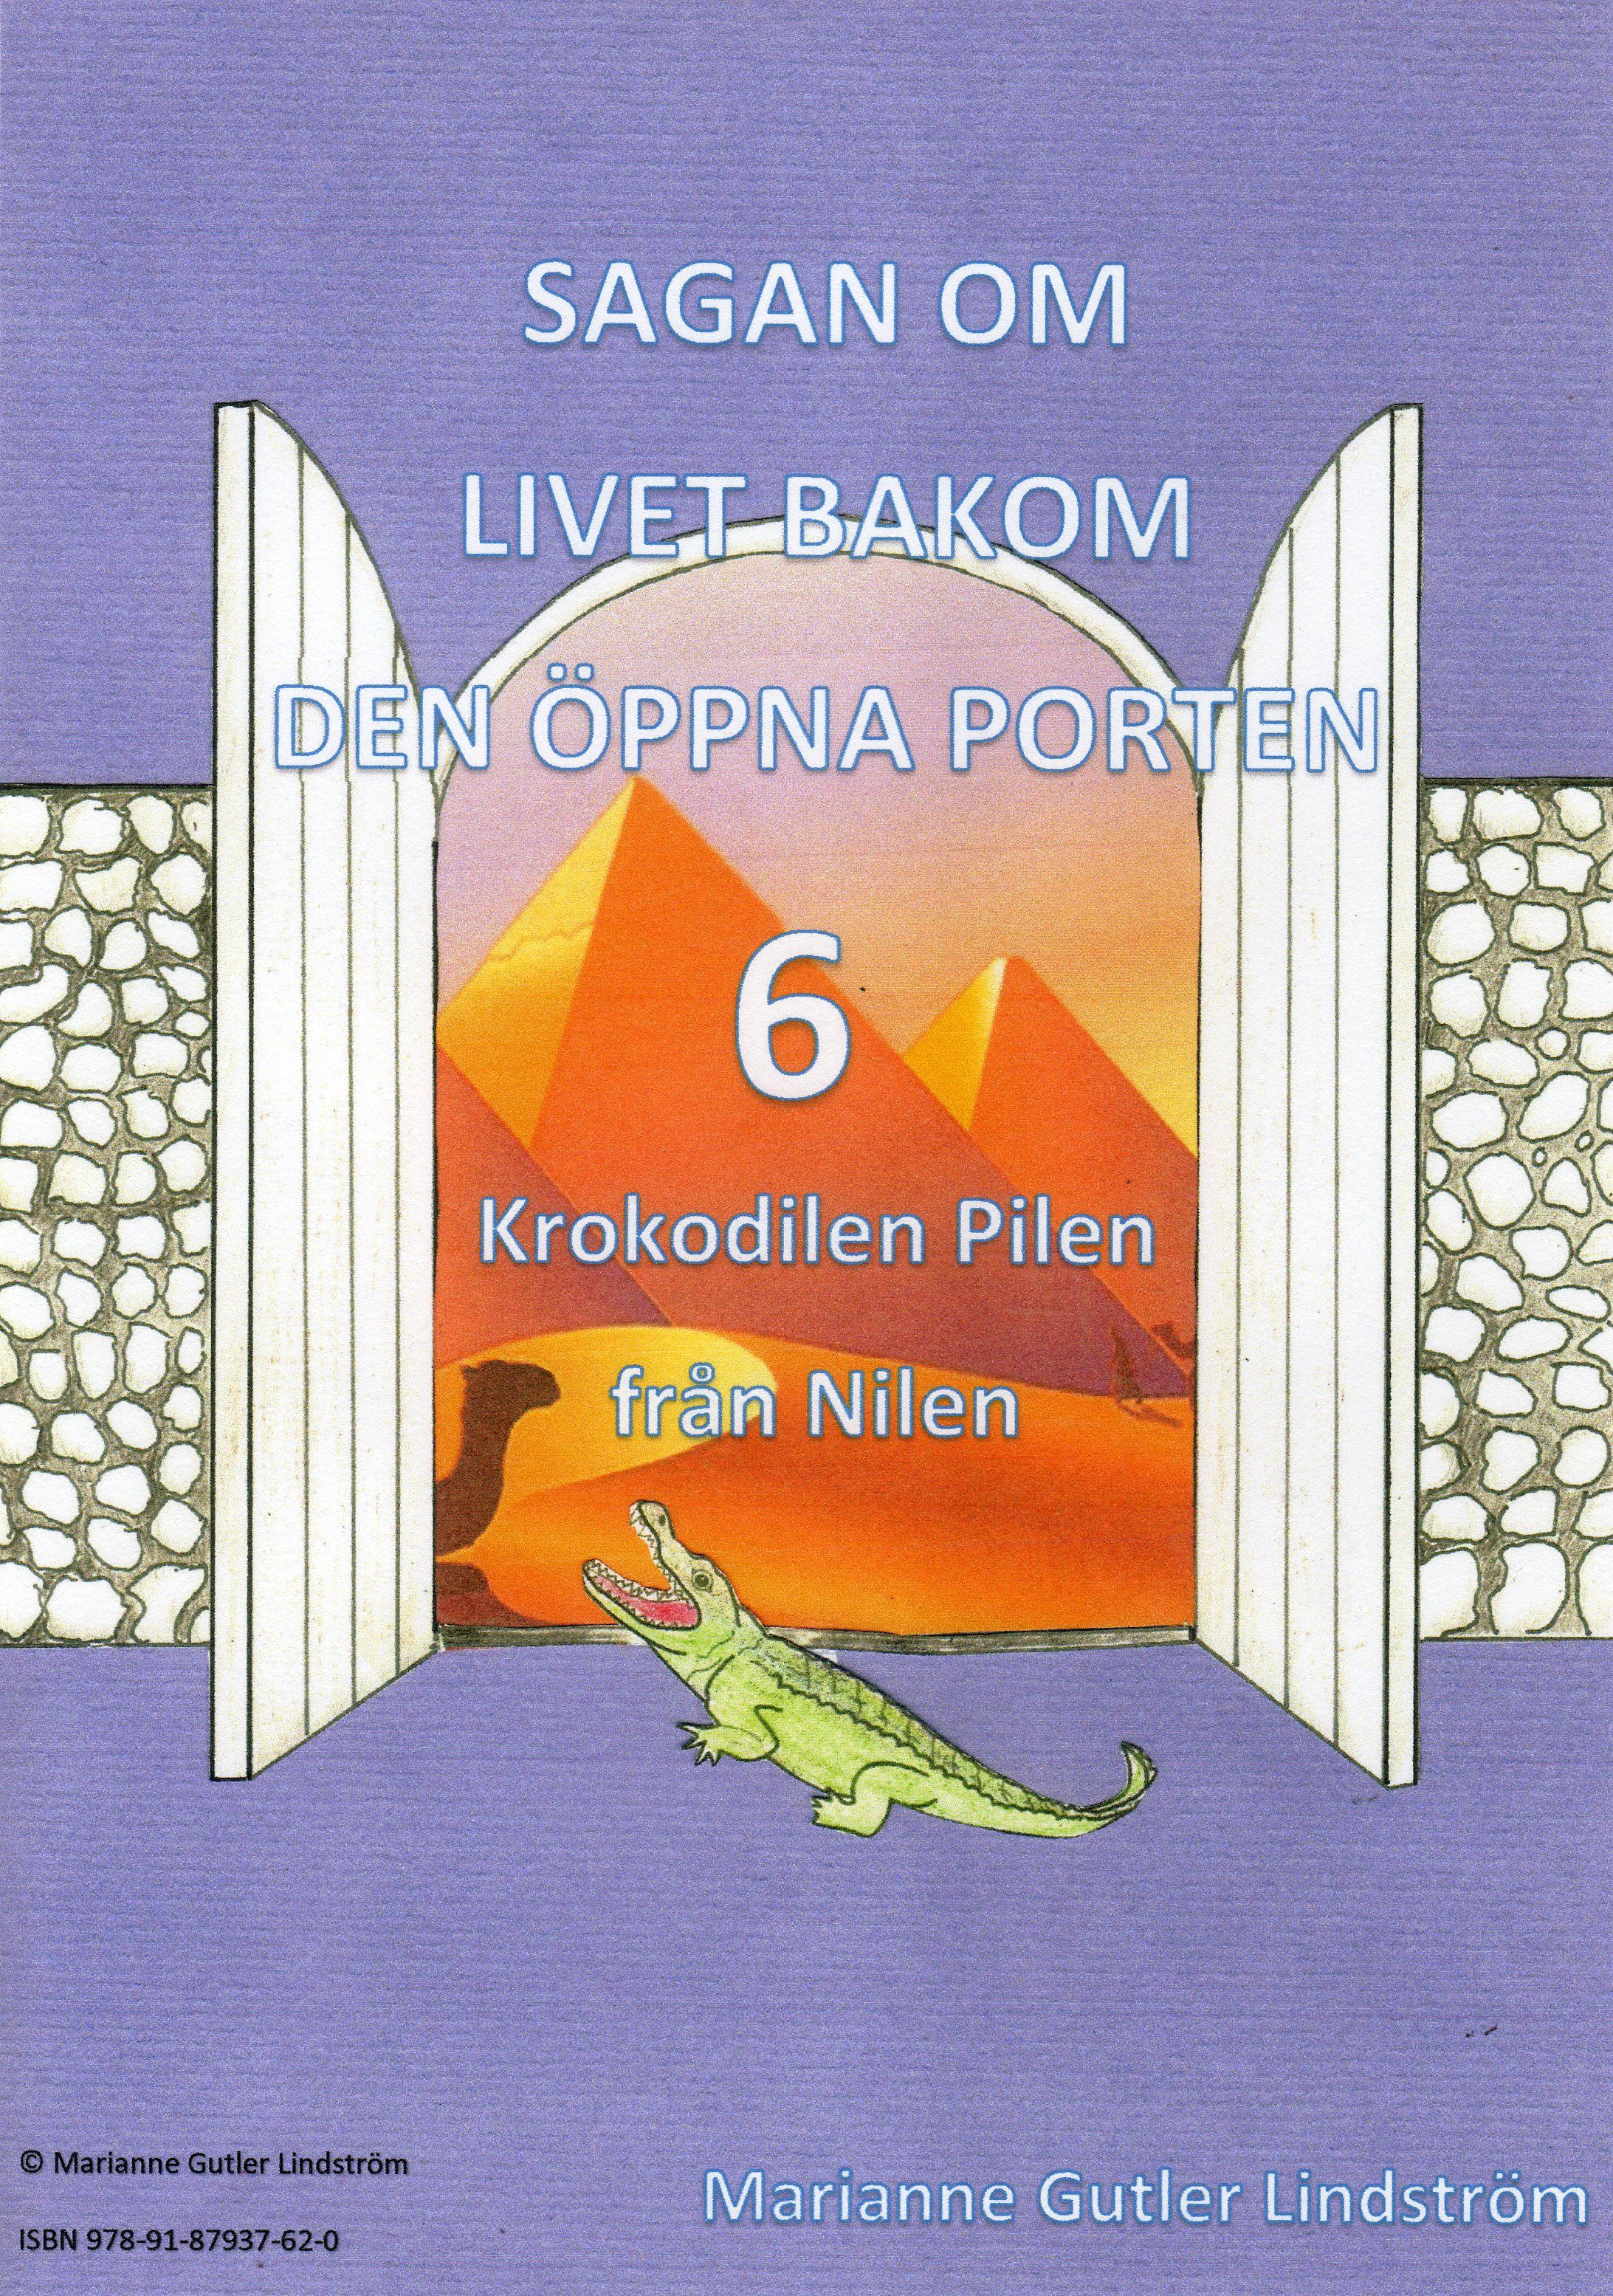 Krokodilen Pilen från Nilen, e-bok av Marianne Gutler Lindström